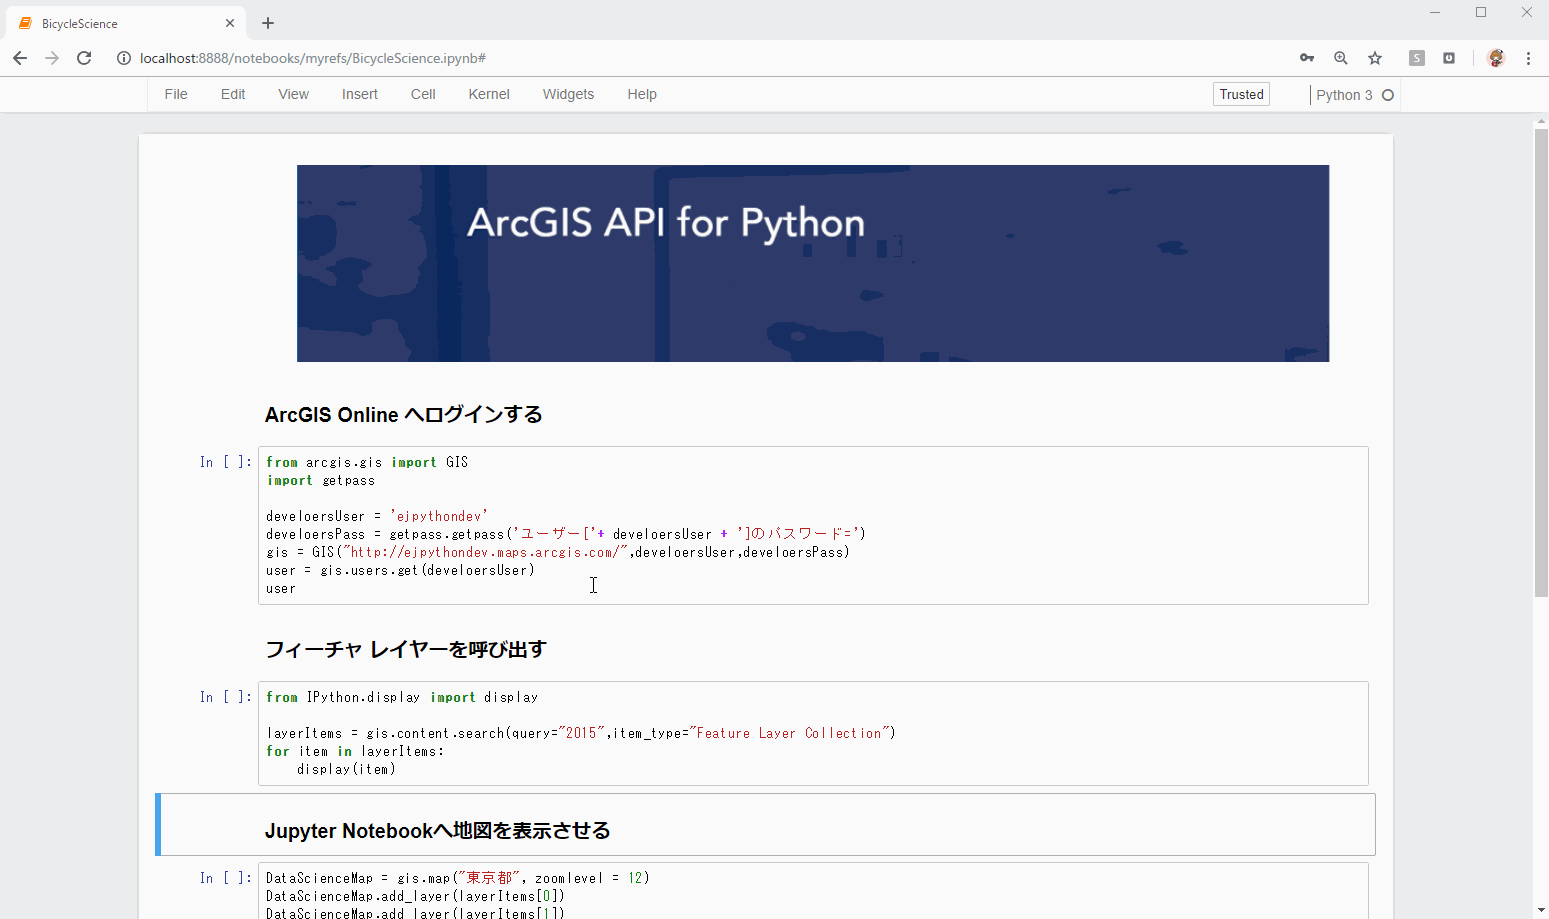 ArcGIS API for Python